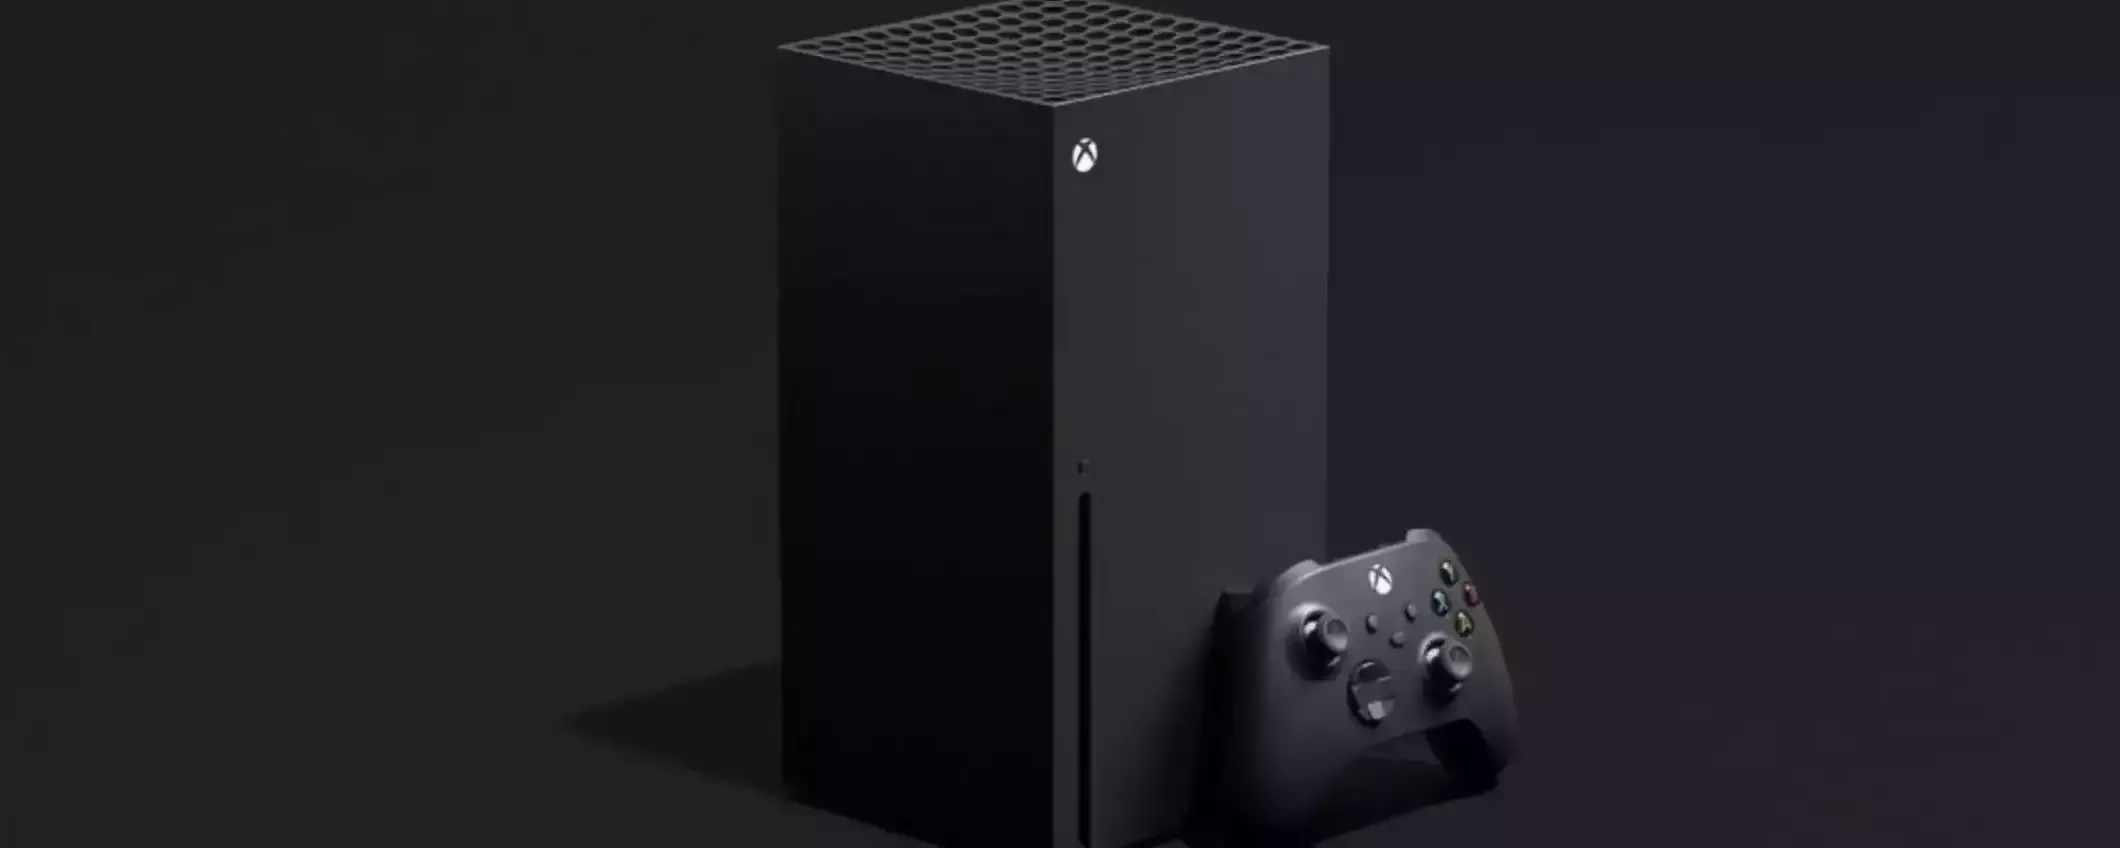 Xbox Series X: a 499€ è sempre una BUONA IDEA